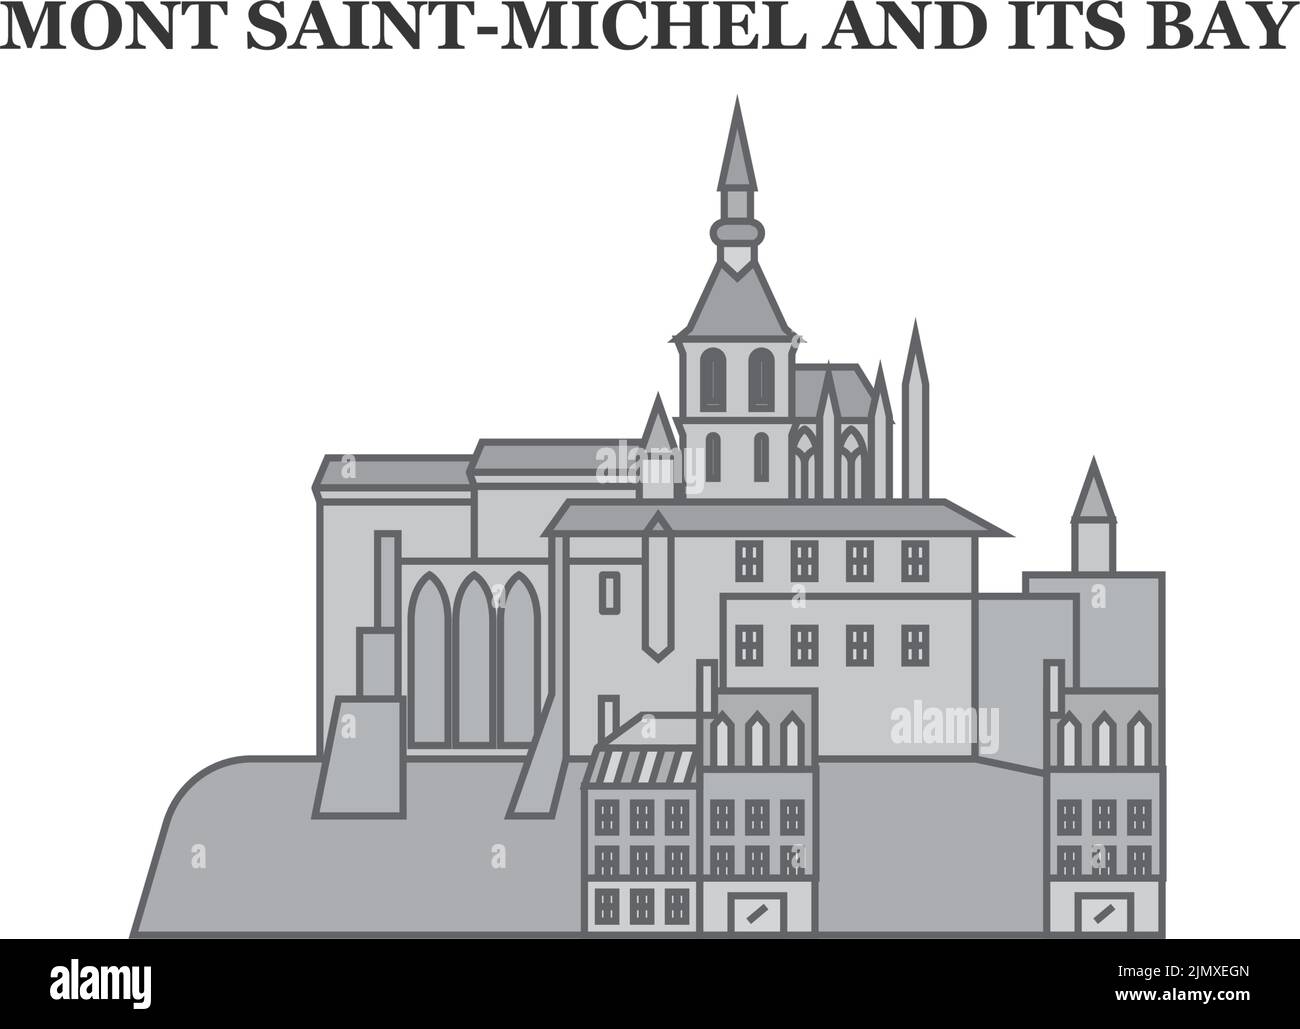 Frankreich, Mont Saint-Michel und seine Bay Landmark City Skyline isoliert Vektor Illustration, Ikonen Stock Vektor